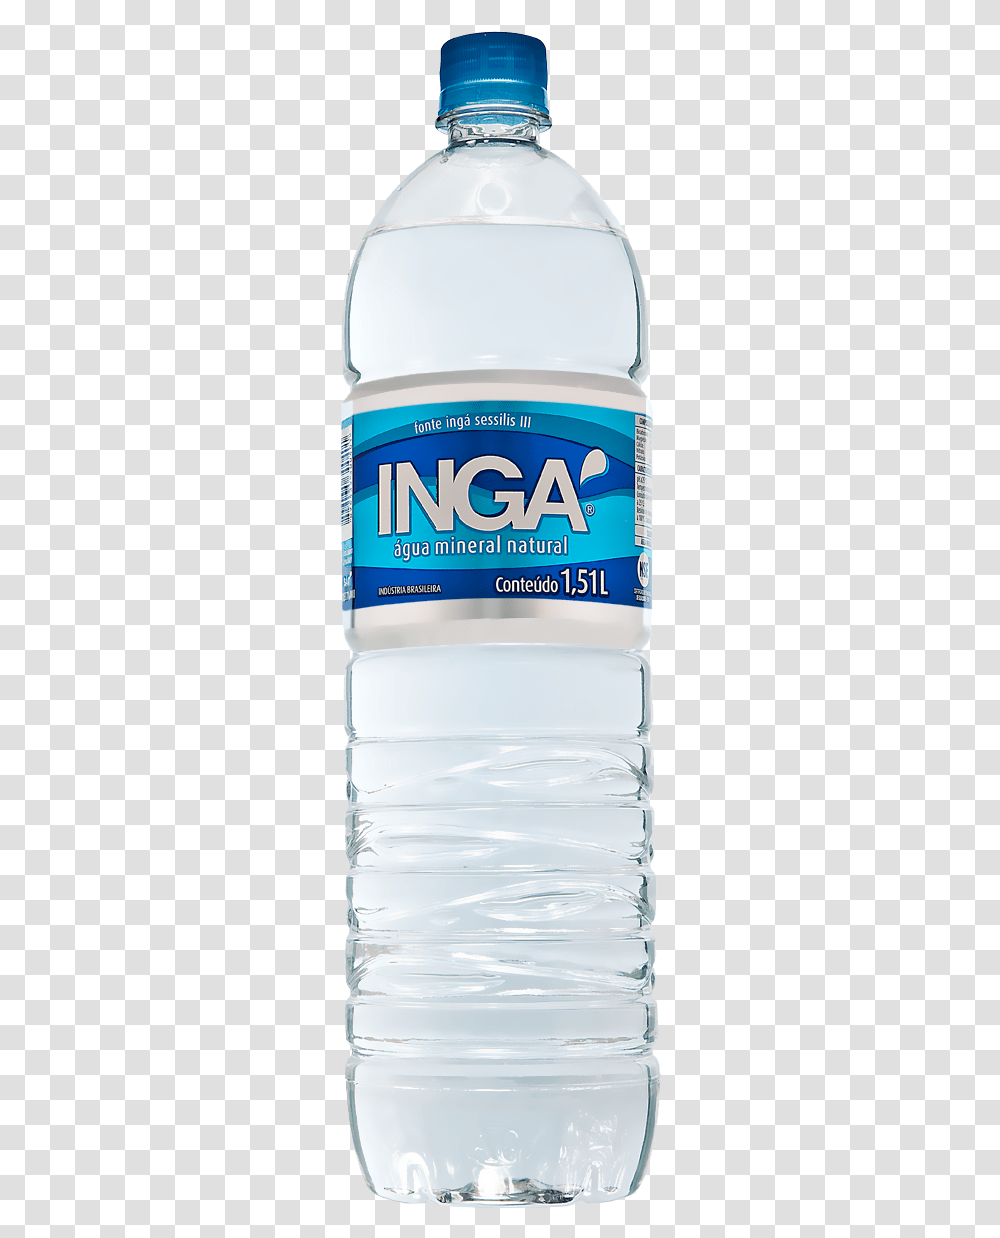 Clip Art Garrafinha De Mineral Image Agua Mineral Inga, Mineral Water, Beverage, Water Bottle, Drink Transparent Png